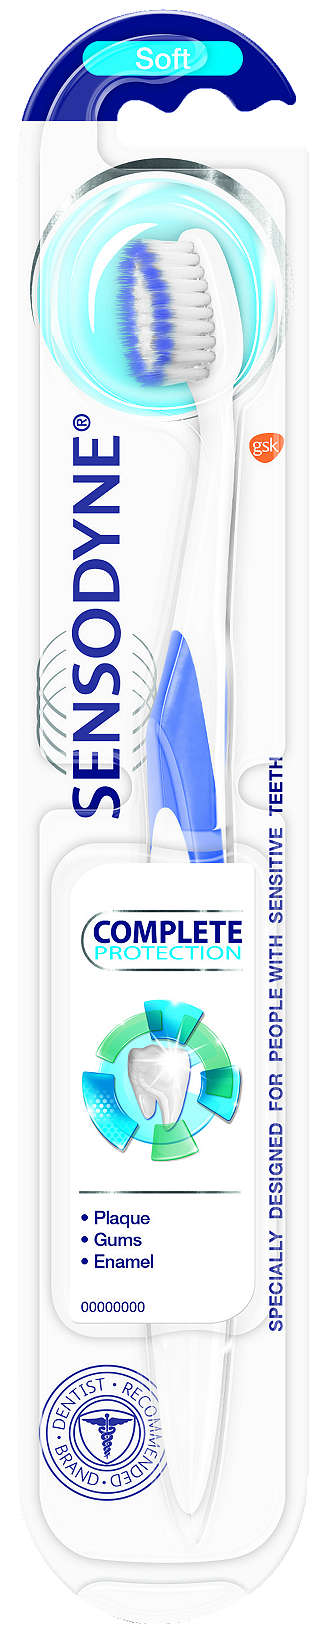 Изображение за продукта Sensodyne Паста или Четка за зъби различни видове